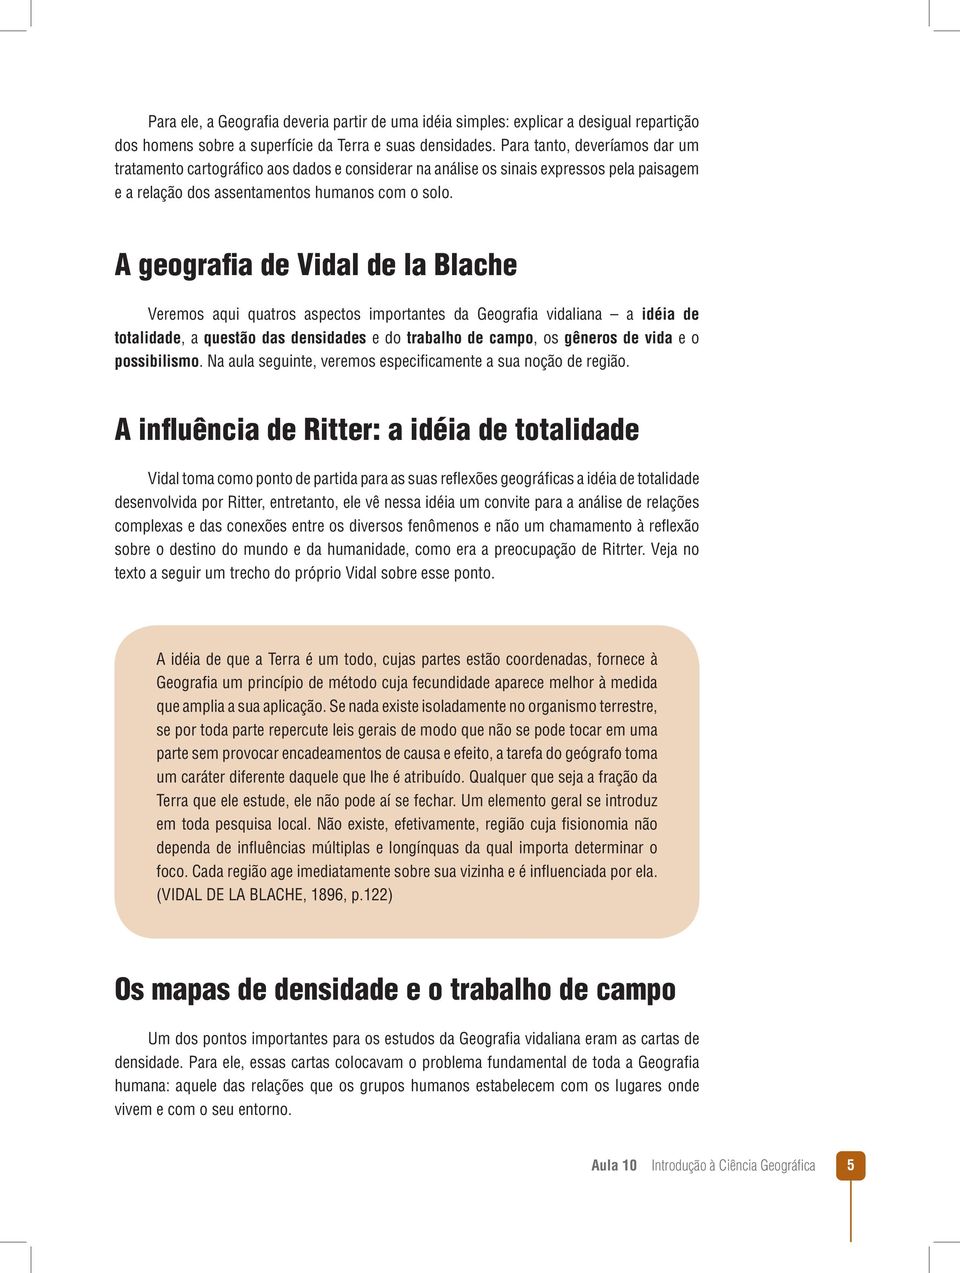 A geografia de Vidal de la Blache Veremos aqui quatros aspectos importantes da Geografia vidaliana a idéia de totalidade, a questão das densidades e do trabalho de campo, os gêneros de vida e o